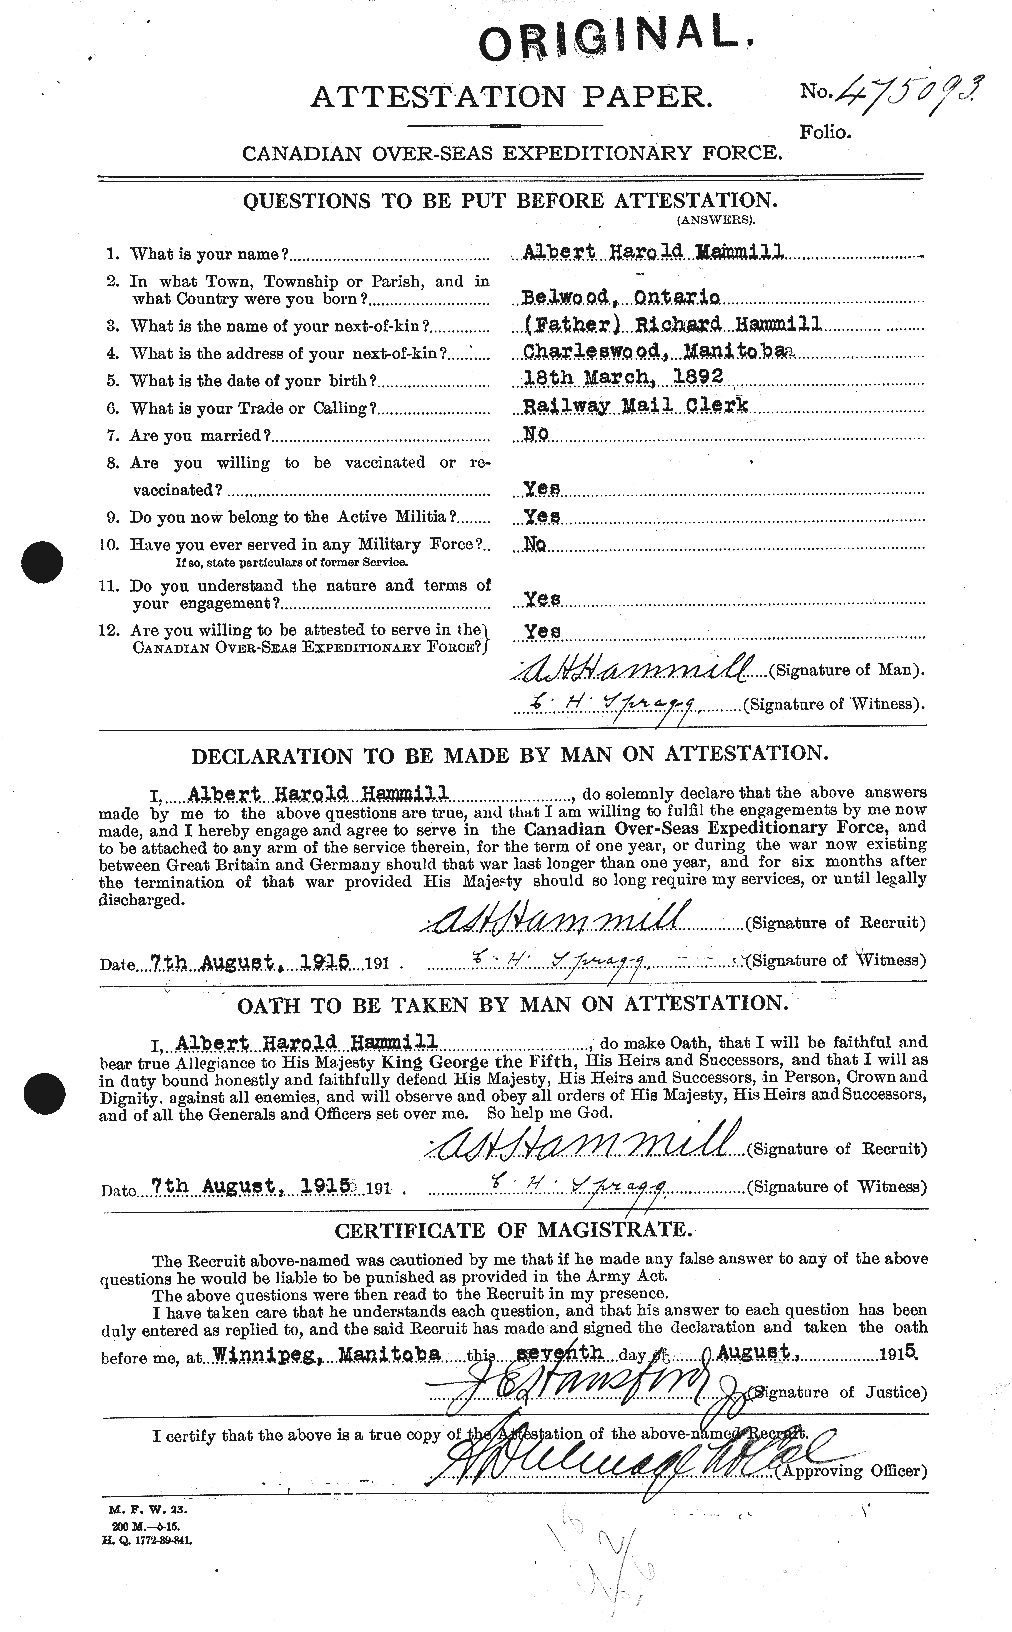 Dossiers du Personnel de la Première Guerre mondiale - CEC 376297a